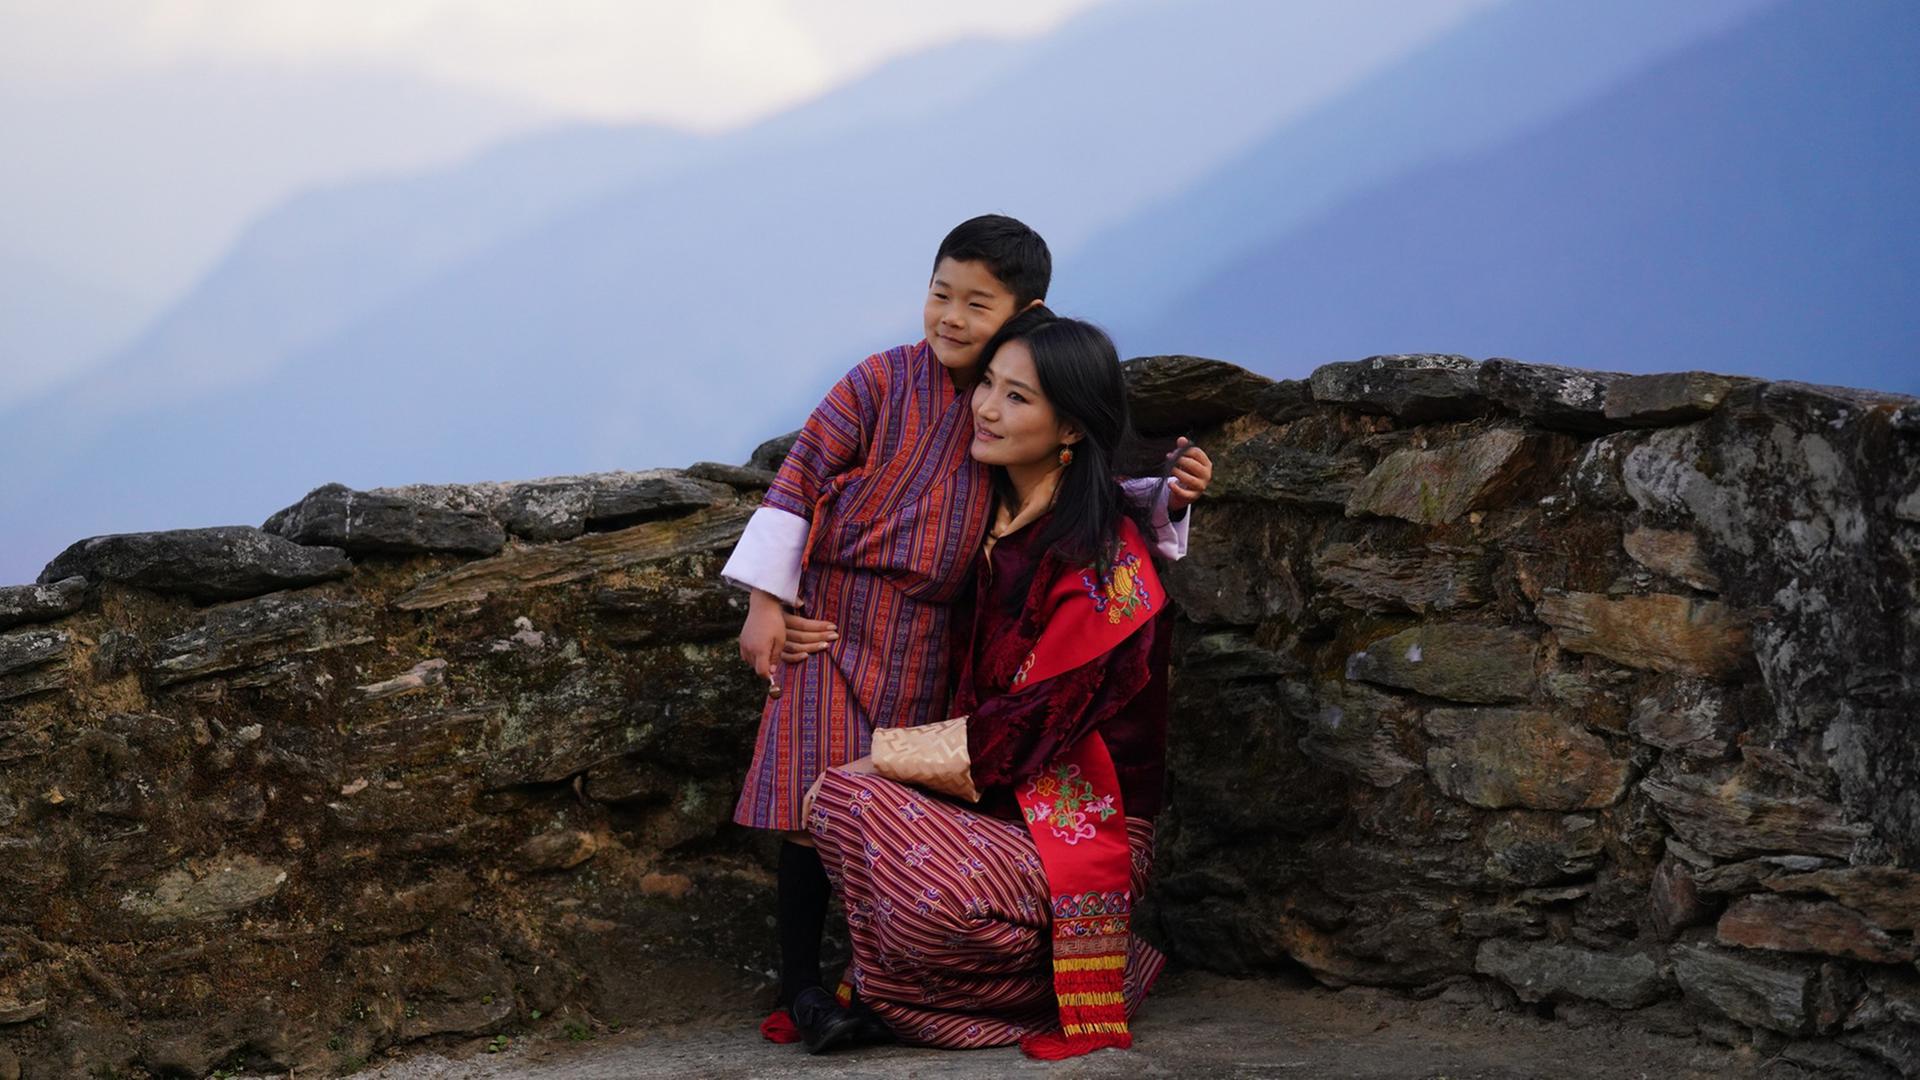 Der Alltag vor allem jüngerer Bhutaner hat sich verändert. Schafft das Land den Spagat zwischen Vergangenheit und Zukunft?